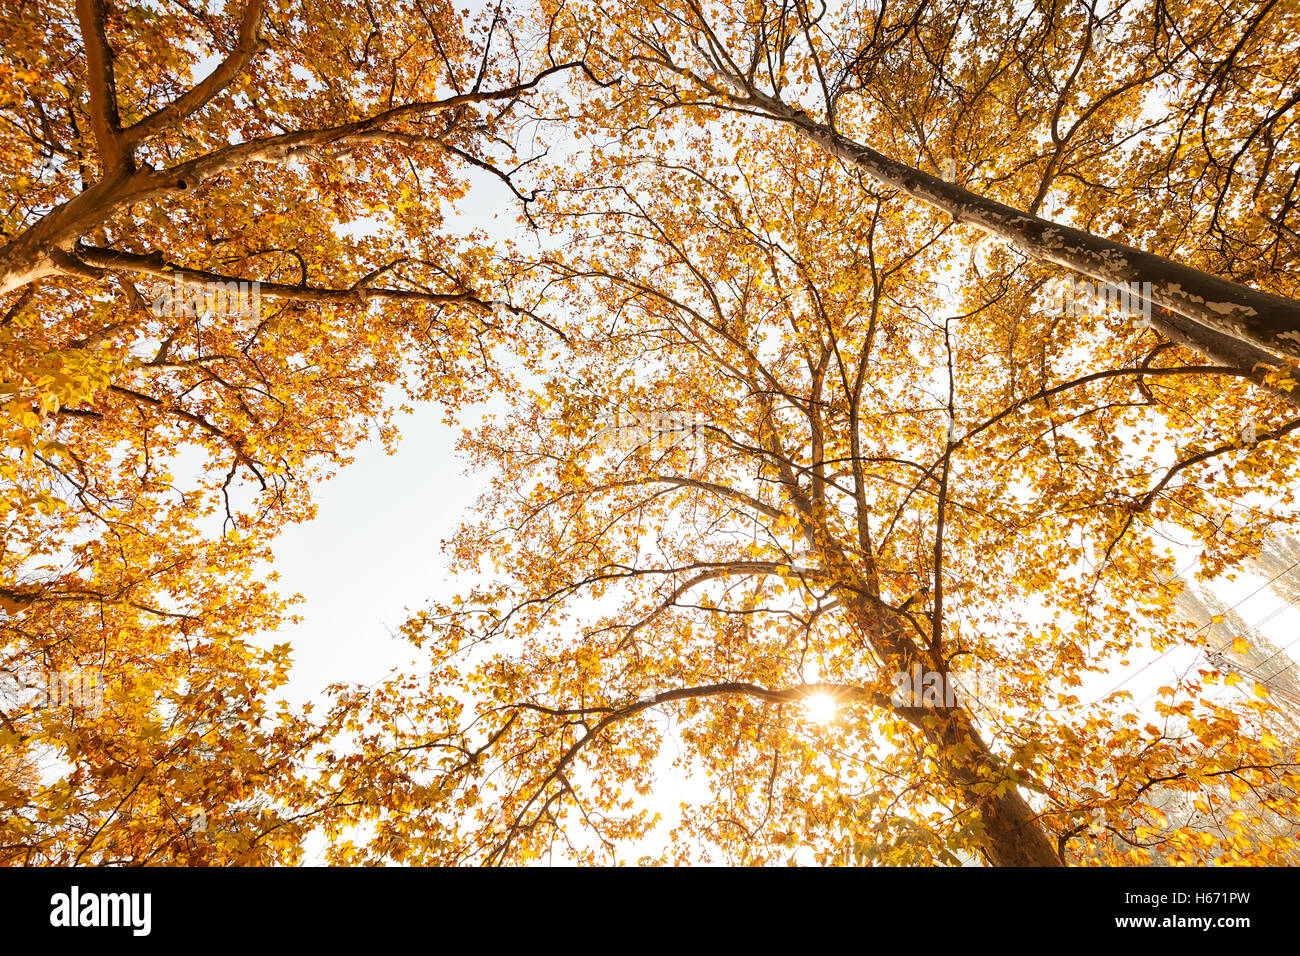 Corona ad albero in autunno in una giornata di sole, nota leggera profondità di campo Foto Stock